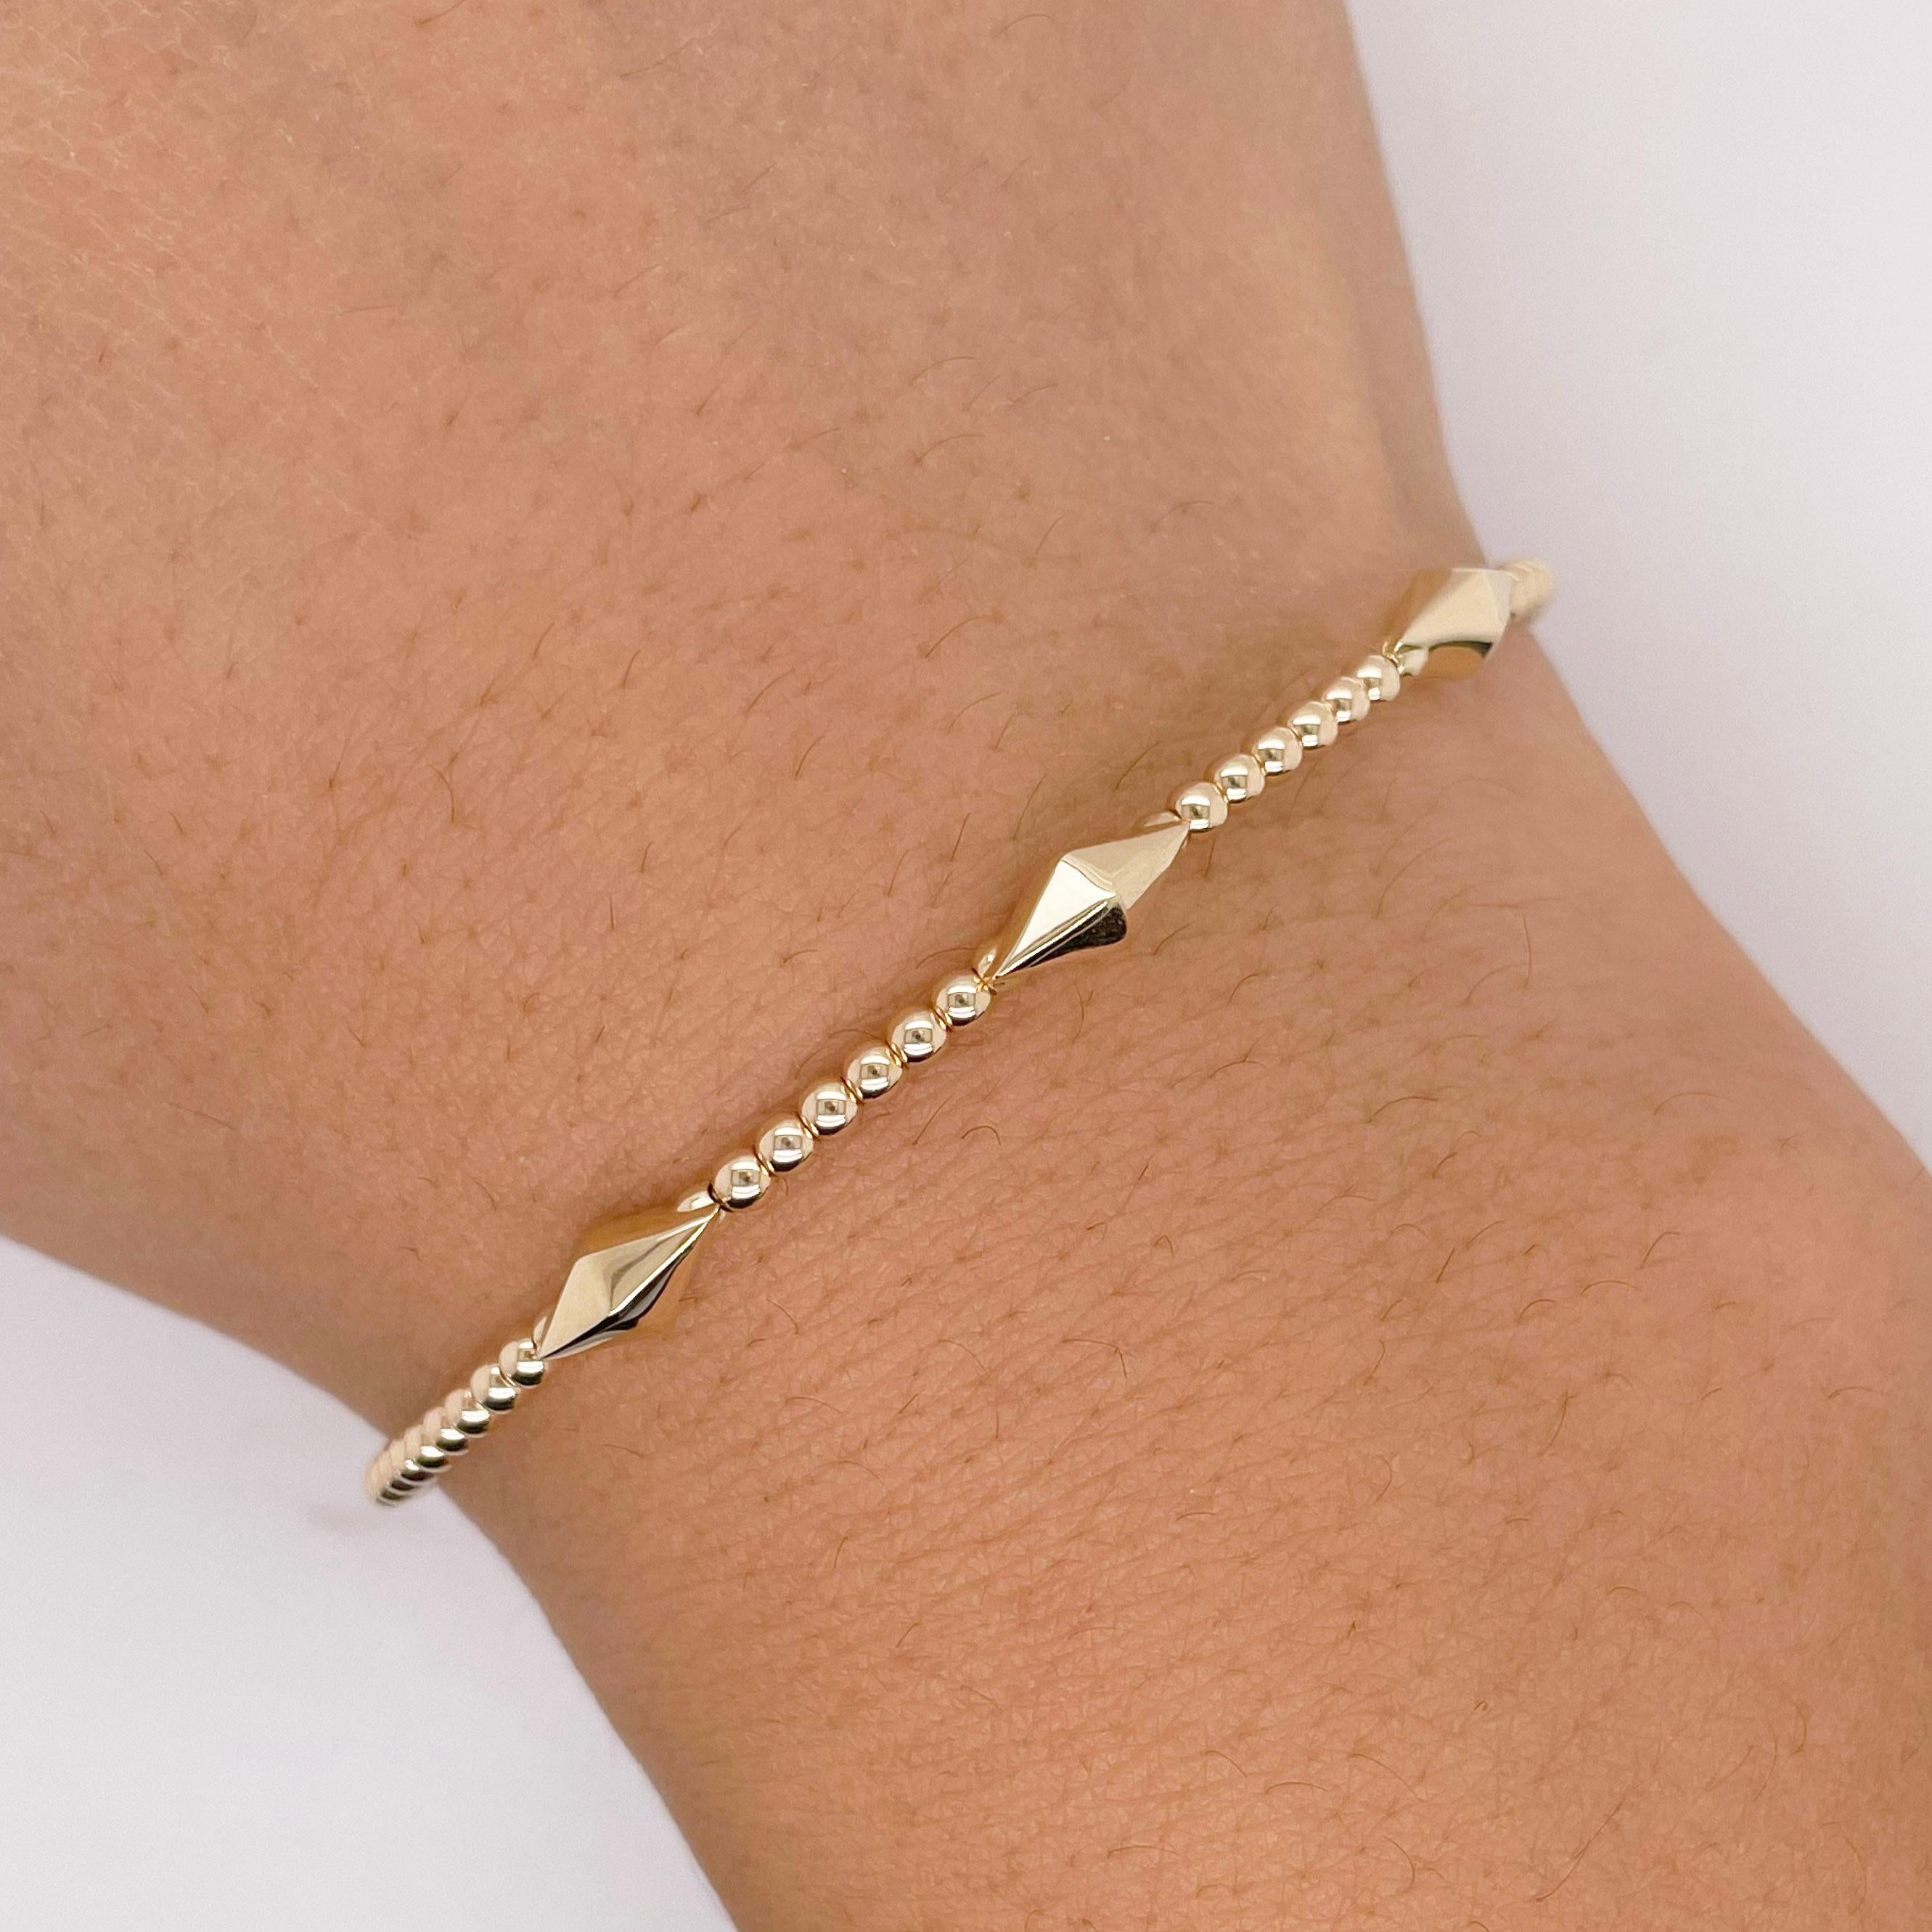 Contemporain Bracelet manchette en perles avec chaînes pyramidales, or jaune, bracelet jonc souple empilable en vente